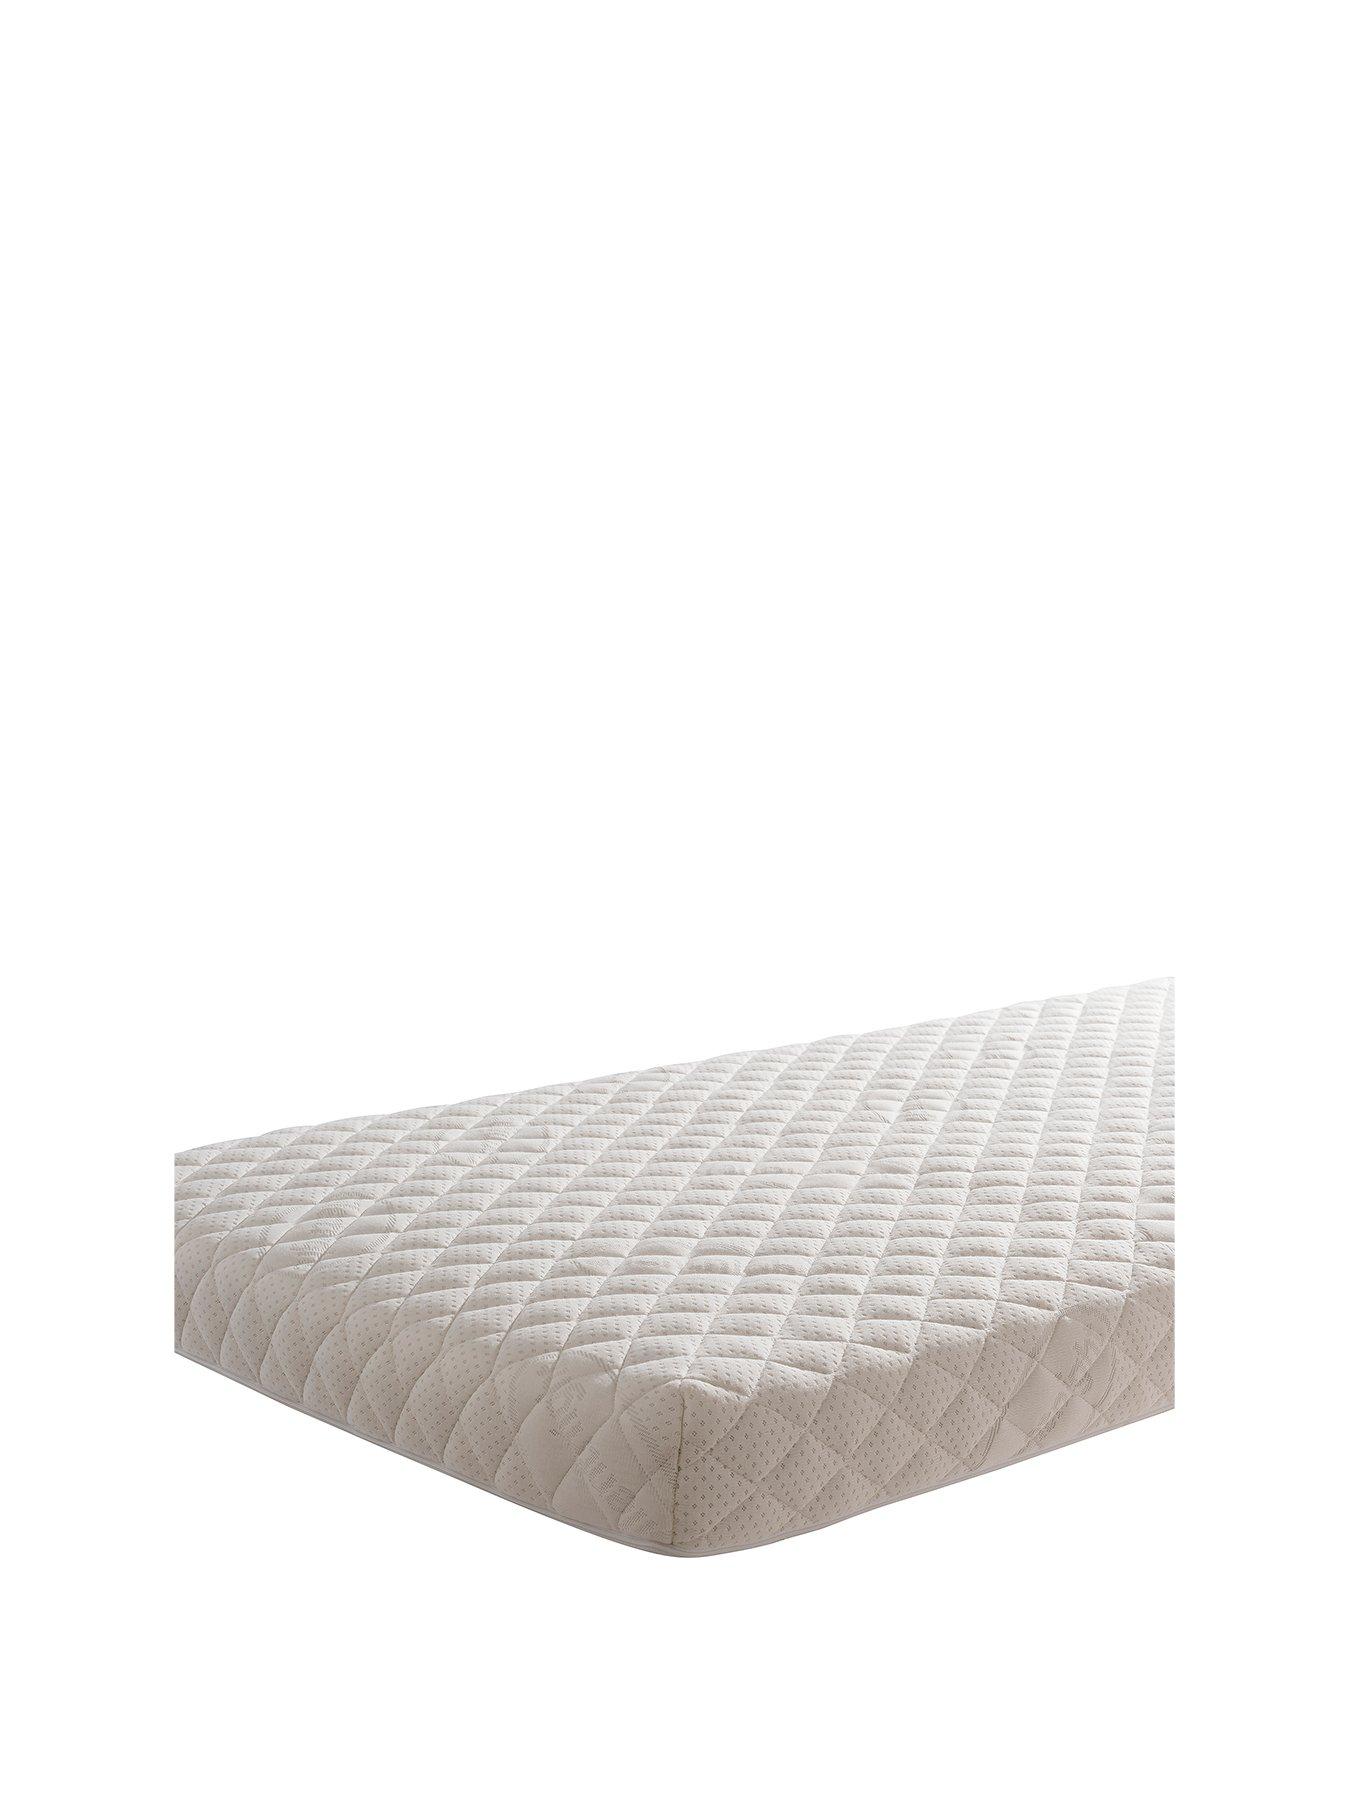 crib mattress 84x43